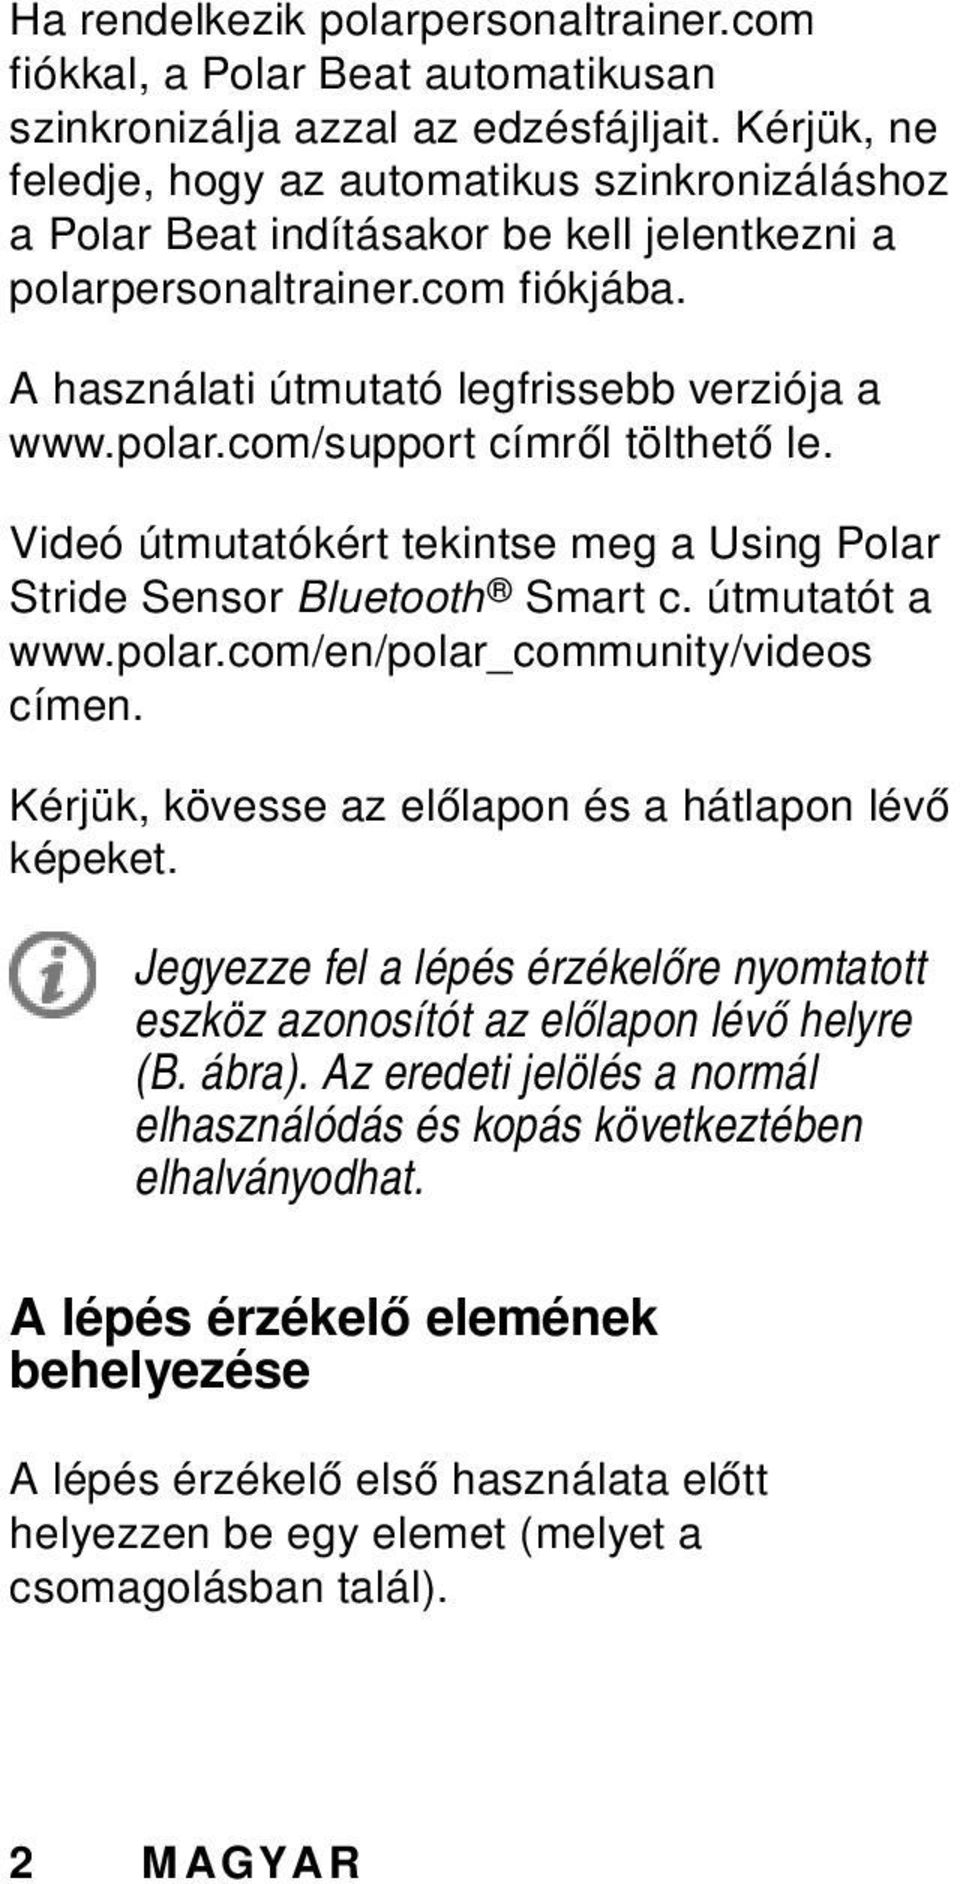 Videó útmutatókért tekintse meg a Using Polar Stride Sensor Bluetooth Smart c. útmutatót a www.polar.com/en/polar_community/videos címen. Kérjük, kövesse az előlapon és a hátlapon lévő képeket.